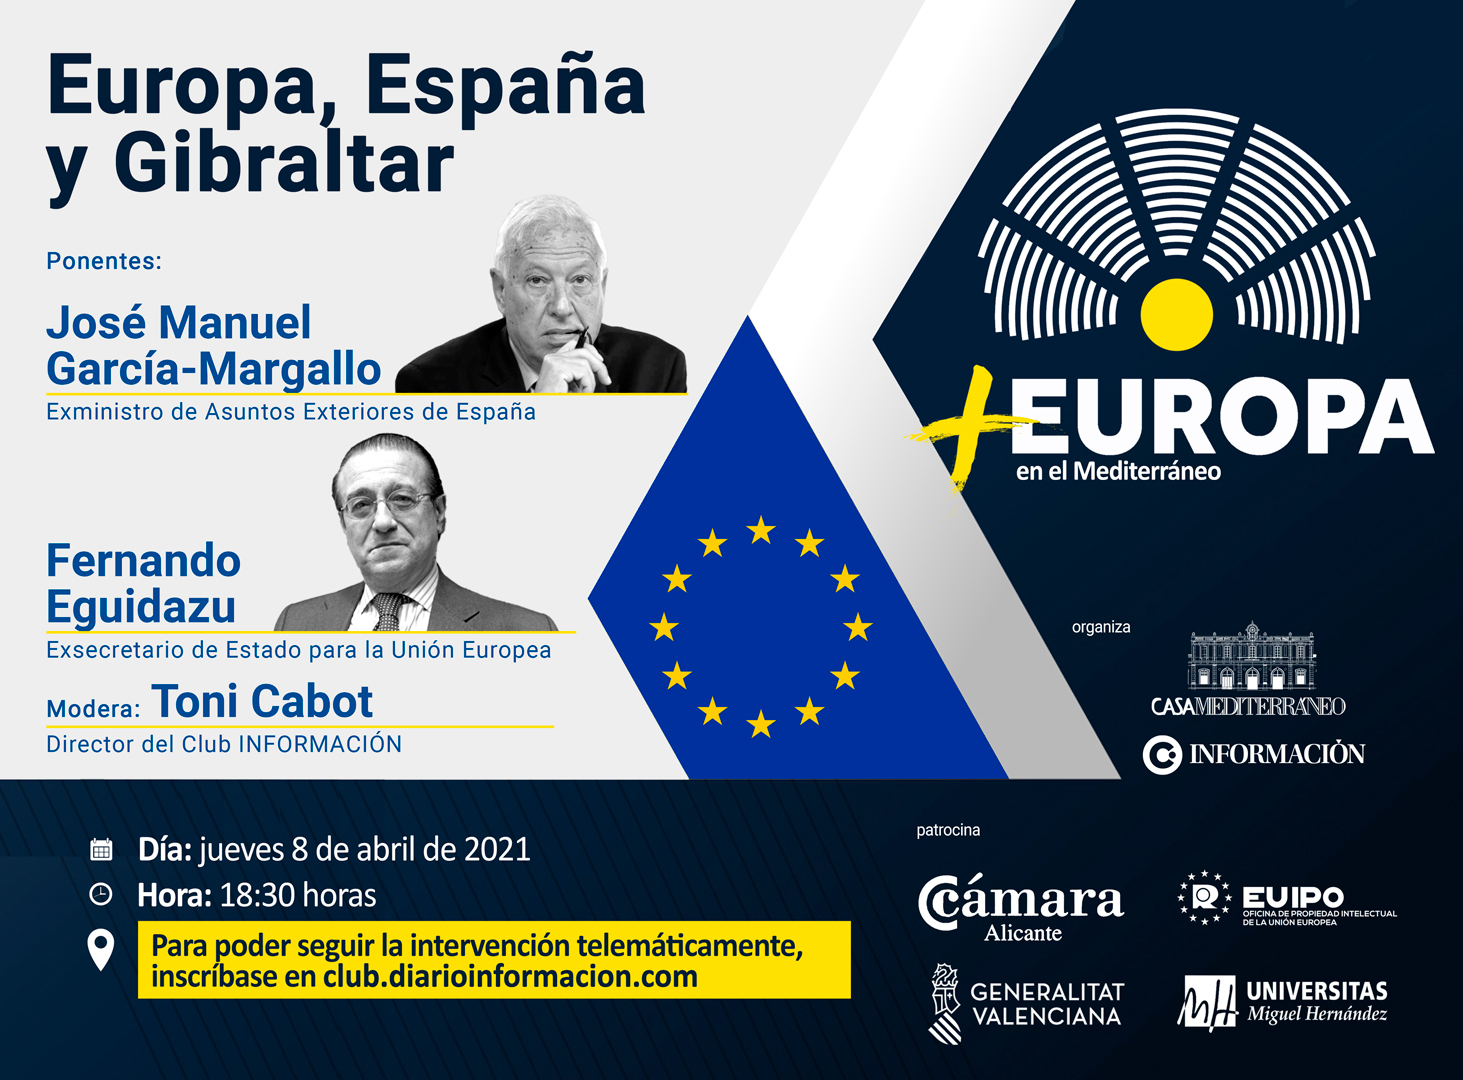 FORO +EUROPA: “Europa, España y Gibraltar”